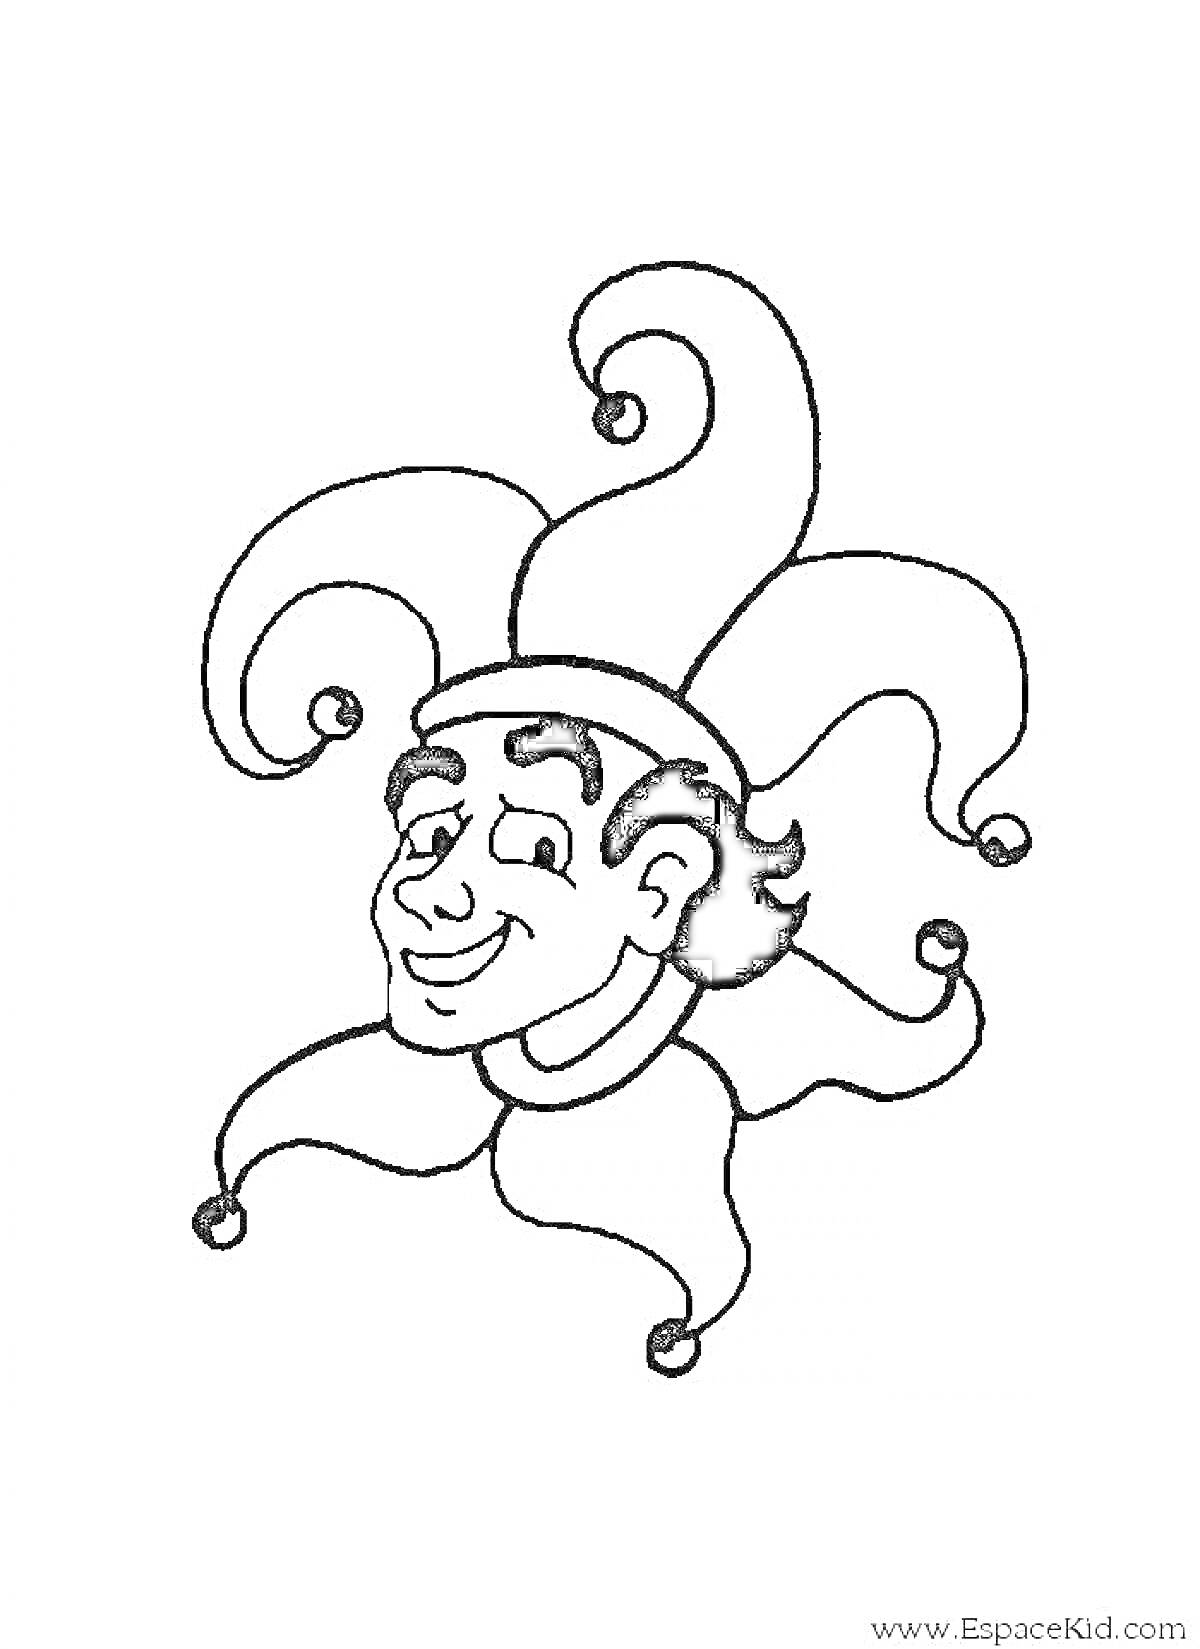 Раскраска Лицо шута в шутовском колпаке с мохнатыми волосами и колокольчиками